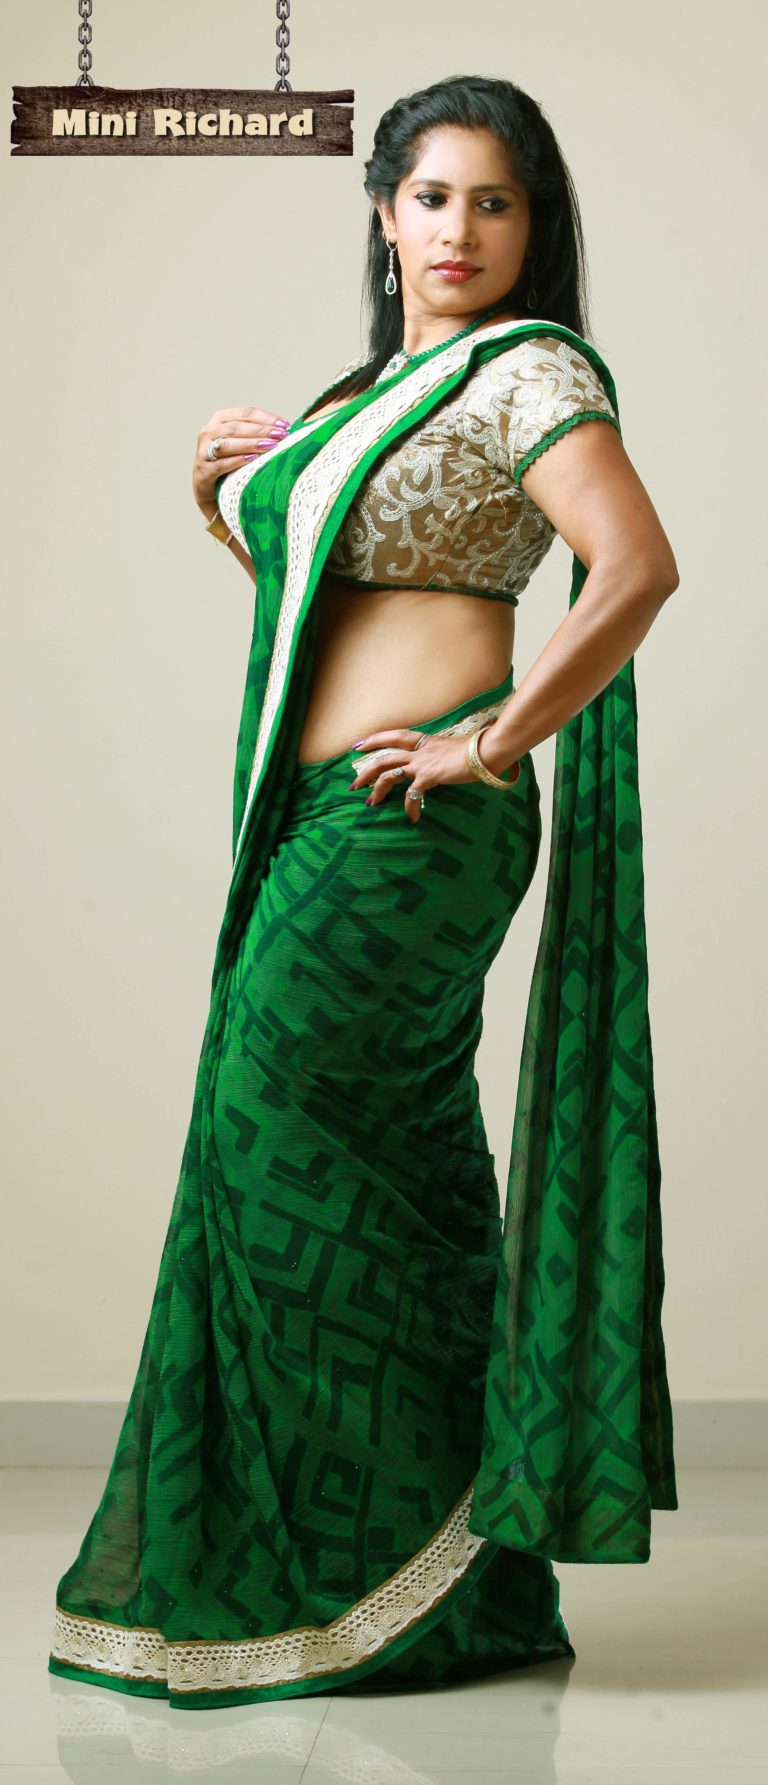 Mini Richard - Kerala Saree Hot Photos Collection 1.